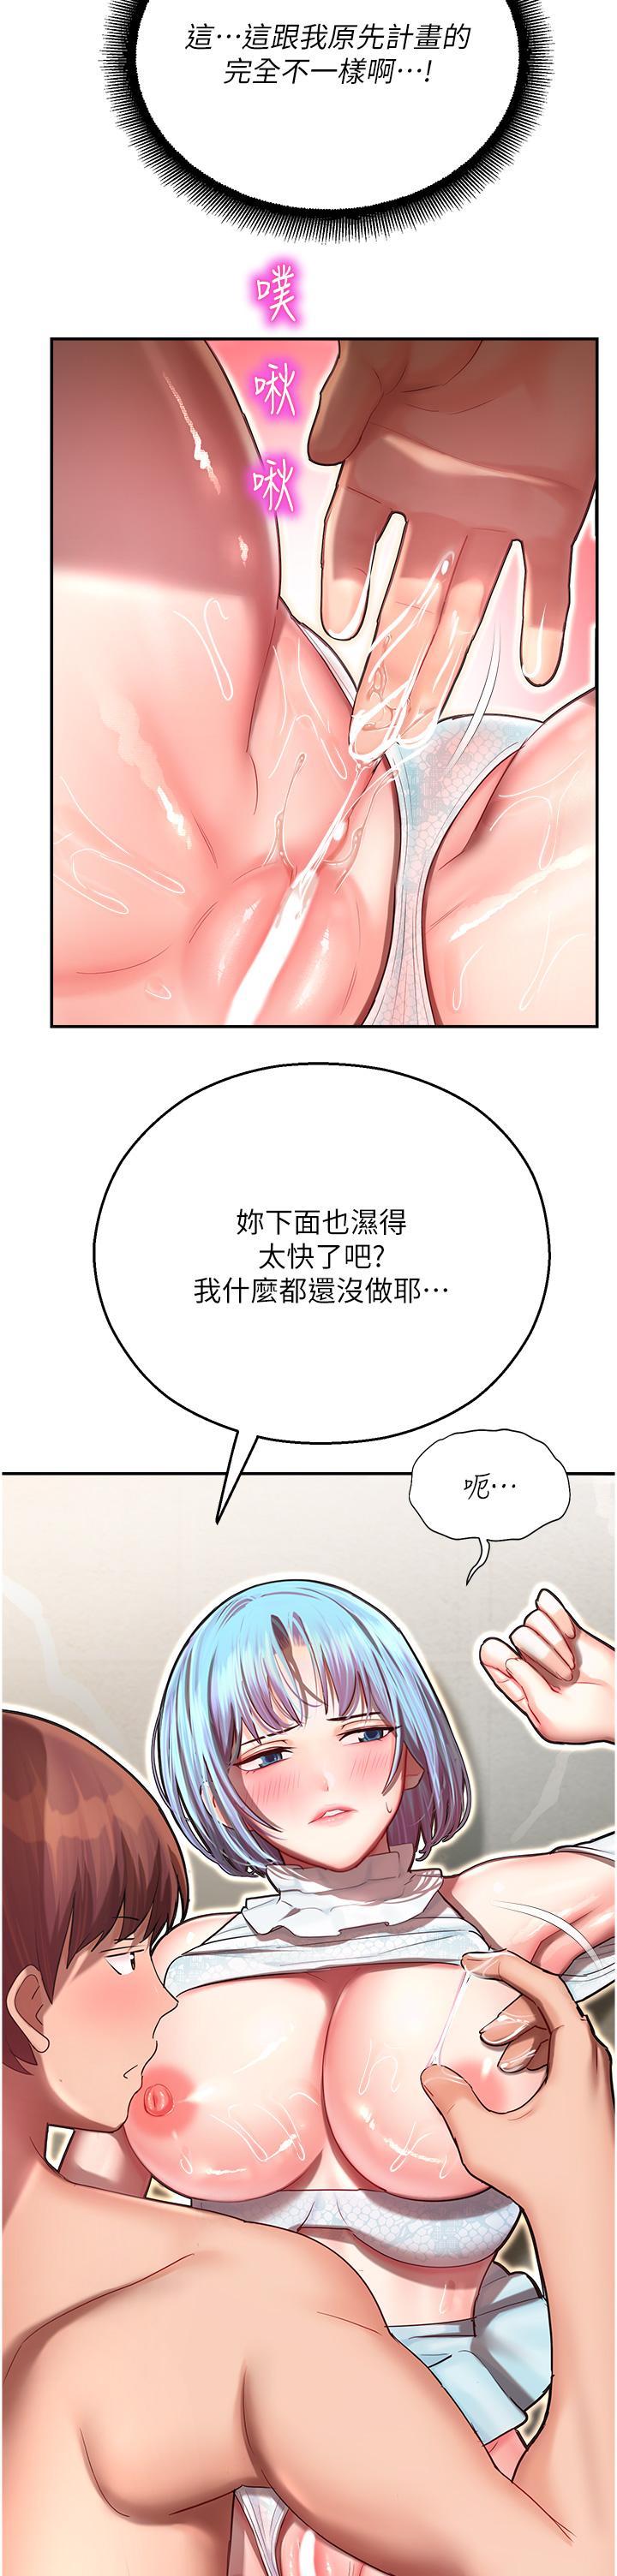 韩国污漫画 命運濕樂園 第10话-前所未有的高潮 15